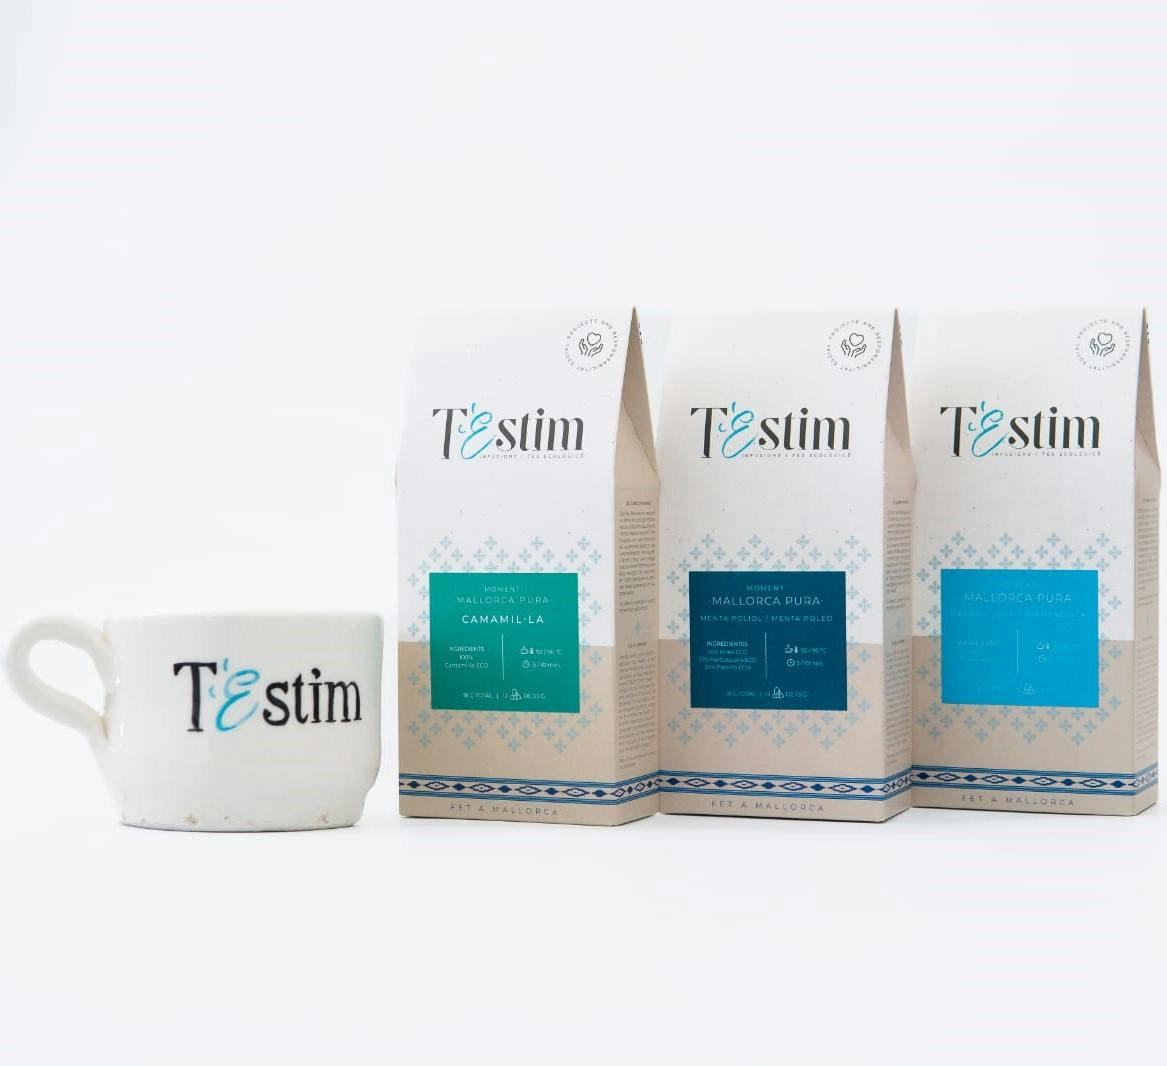 4 T'Estim-Produkte - 3 Aufgüsse und 1 Tasse